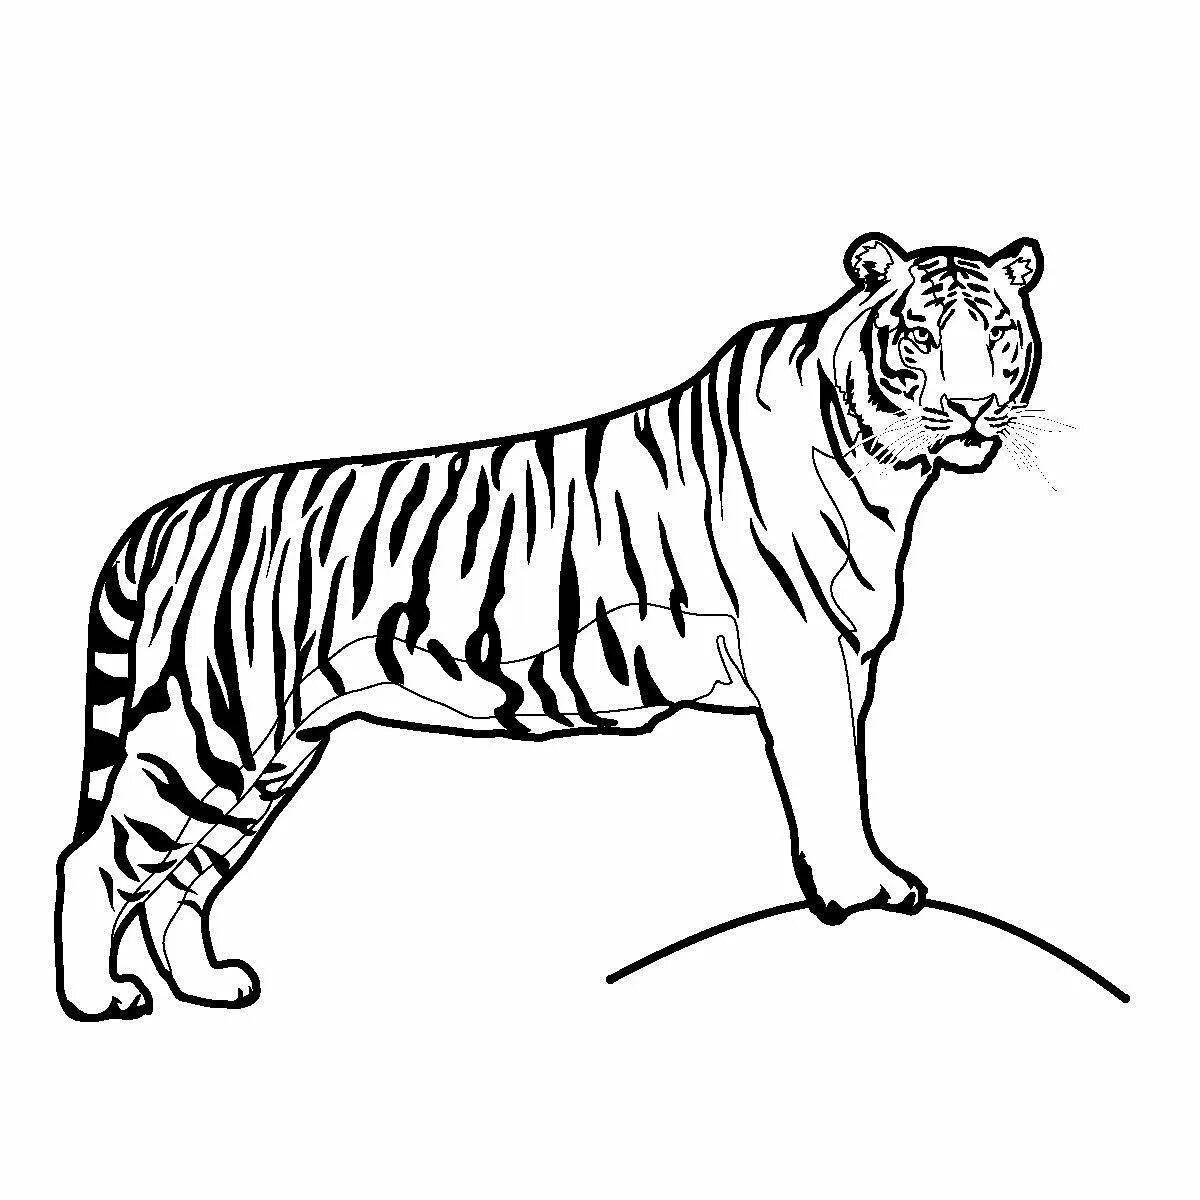 Tiger 2 #2